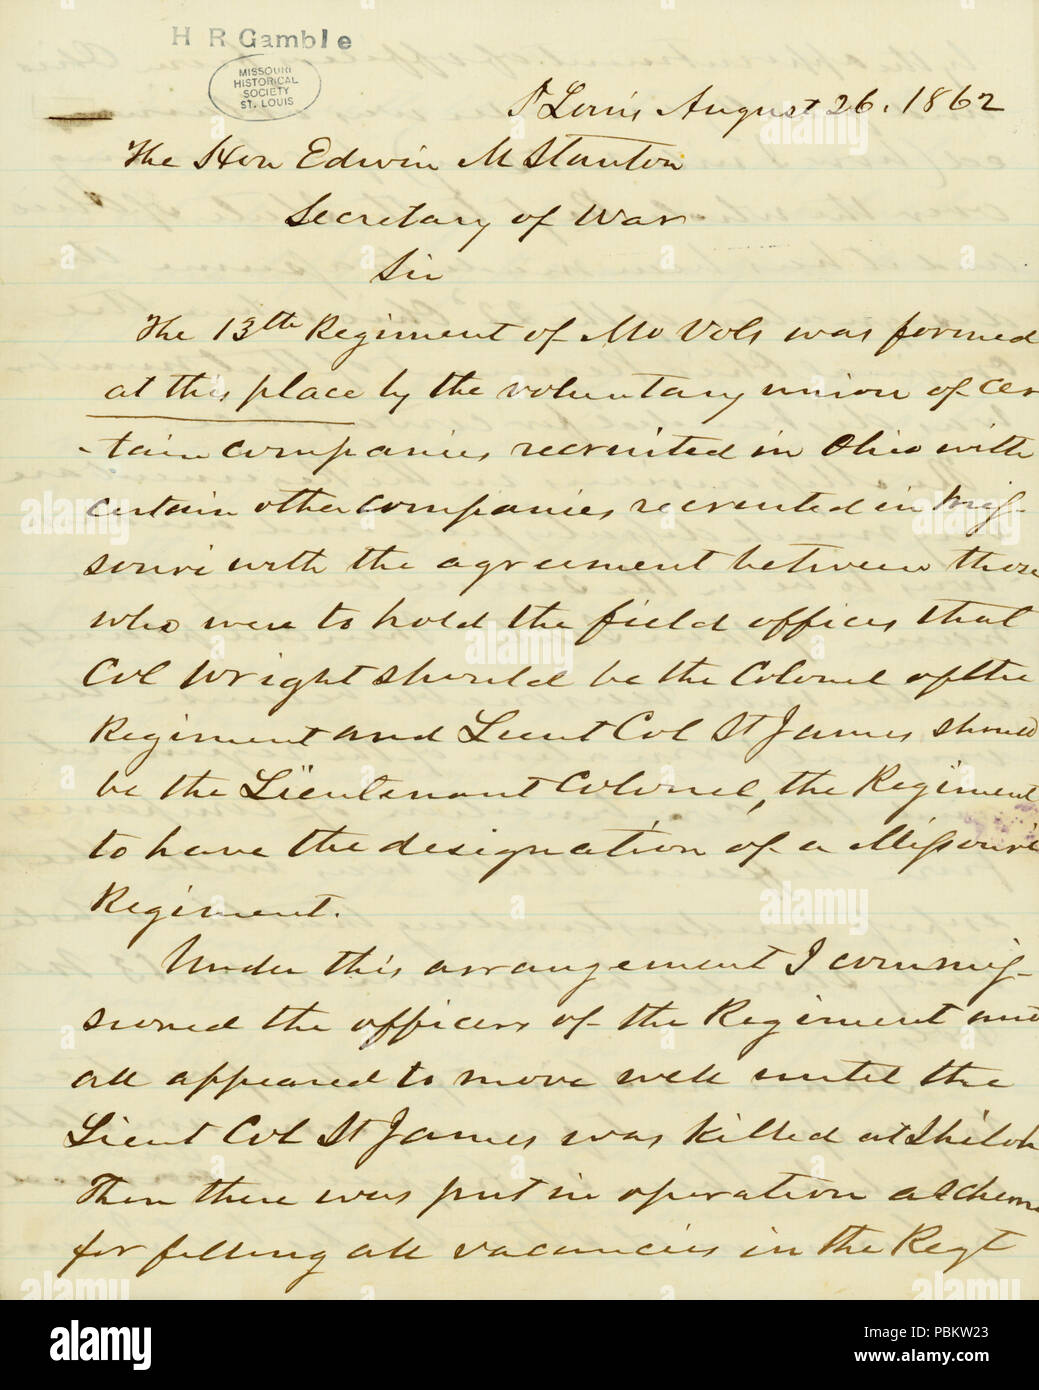 908 Lettre signée H.R. Gamble, Saint Louis, à l'honorable Edwin M. Stanton, secrétaire de la guerre, le 26 août 1862 Banque D'Images